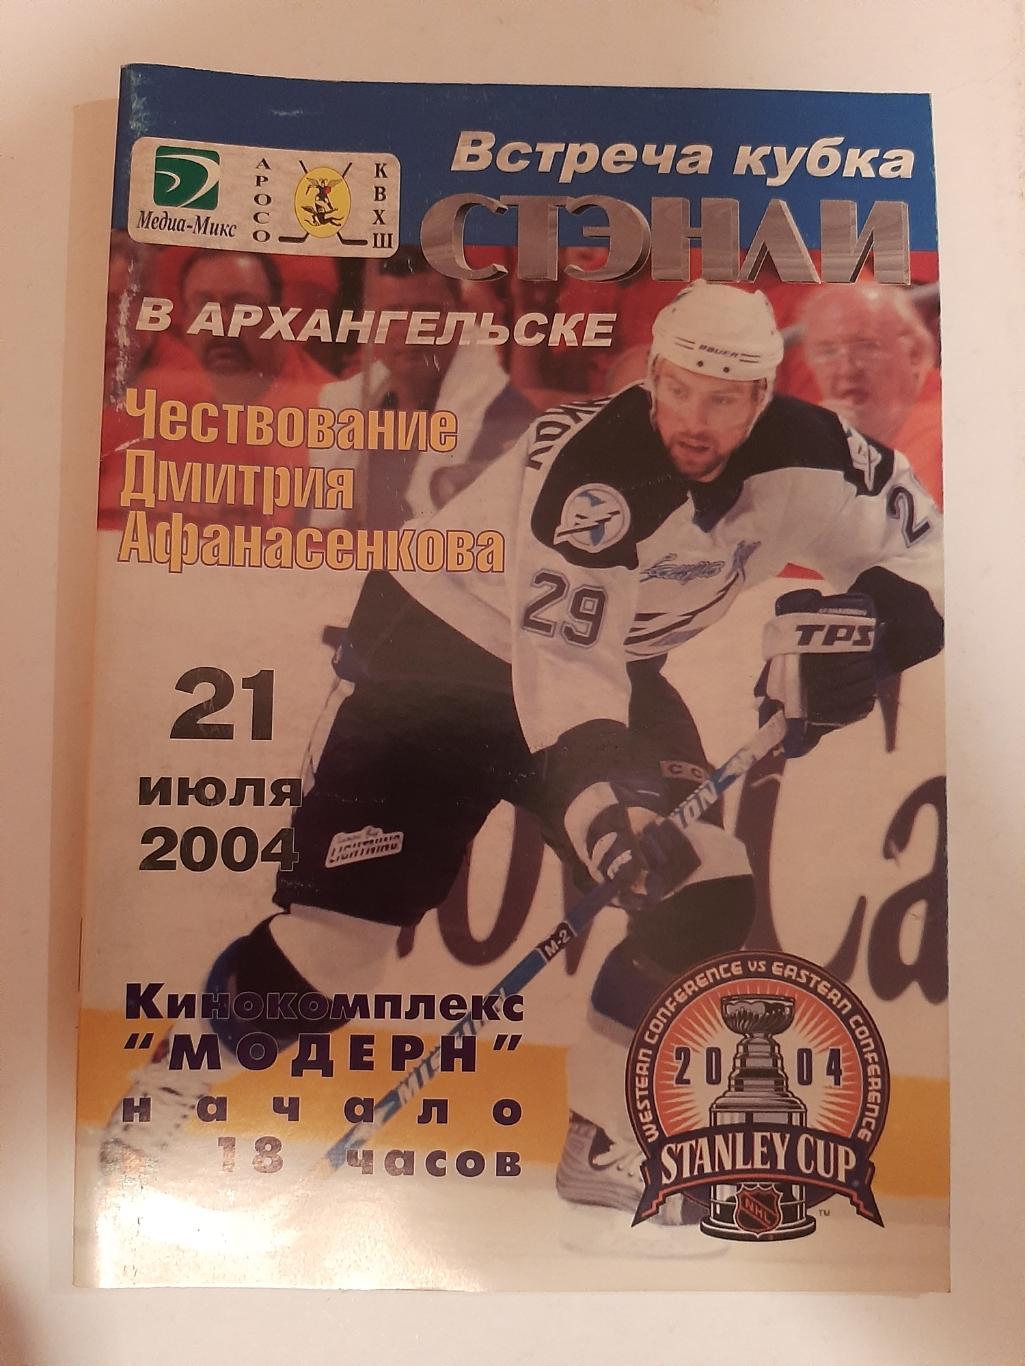 Встреча кубка Стэнли в Архангельске 21.07.2004